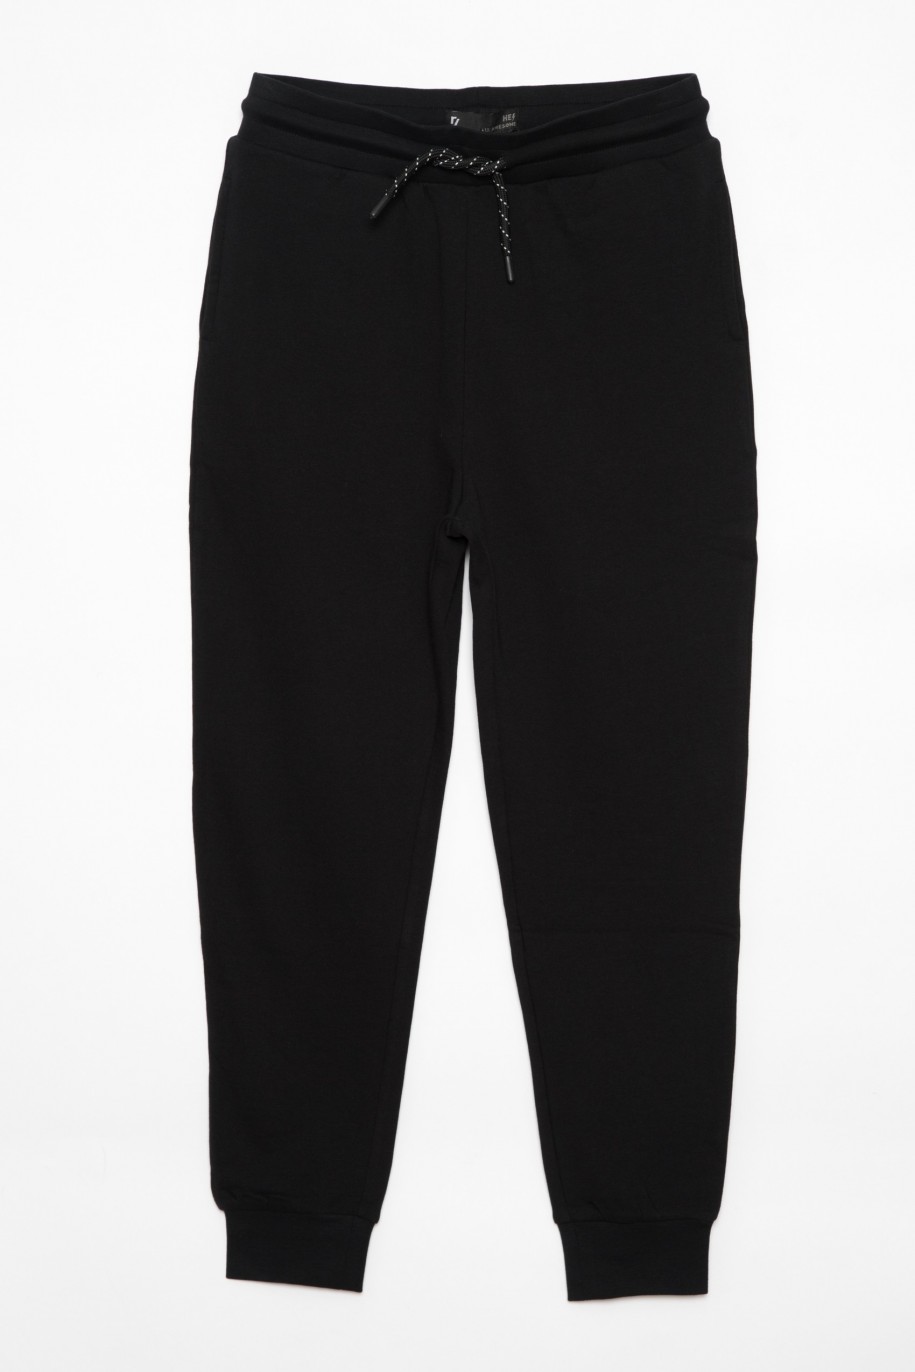 Czarne spodnie dresowe dla chłopaka z nadrukami z tyłu nogawek - 25535